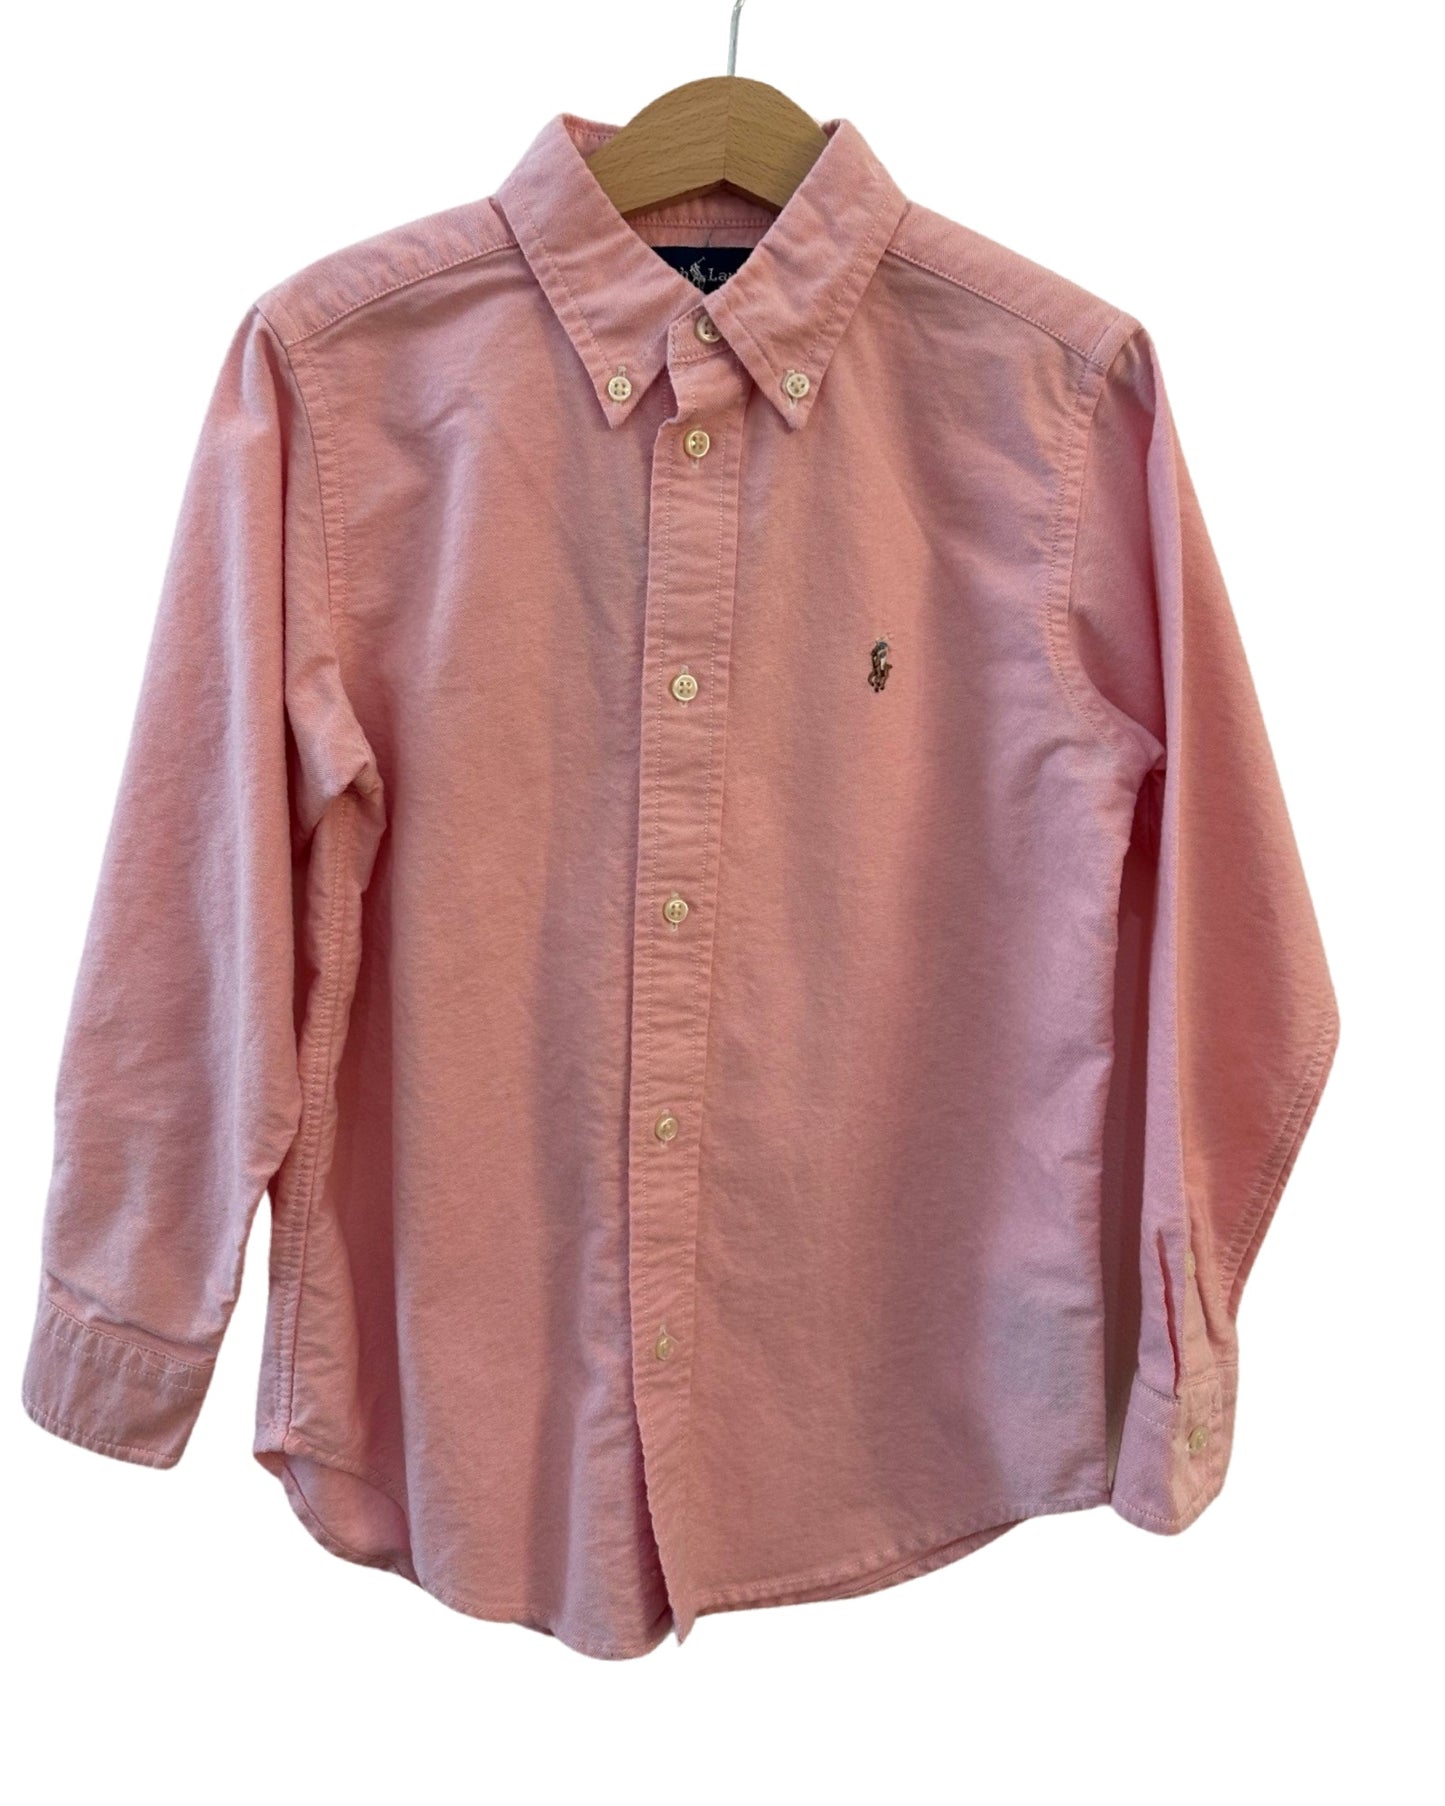 Ralph Lauren long sleeve shirt in pink (5-6yrs)